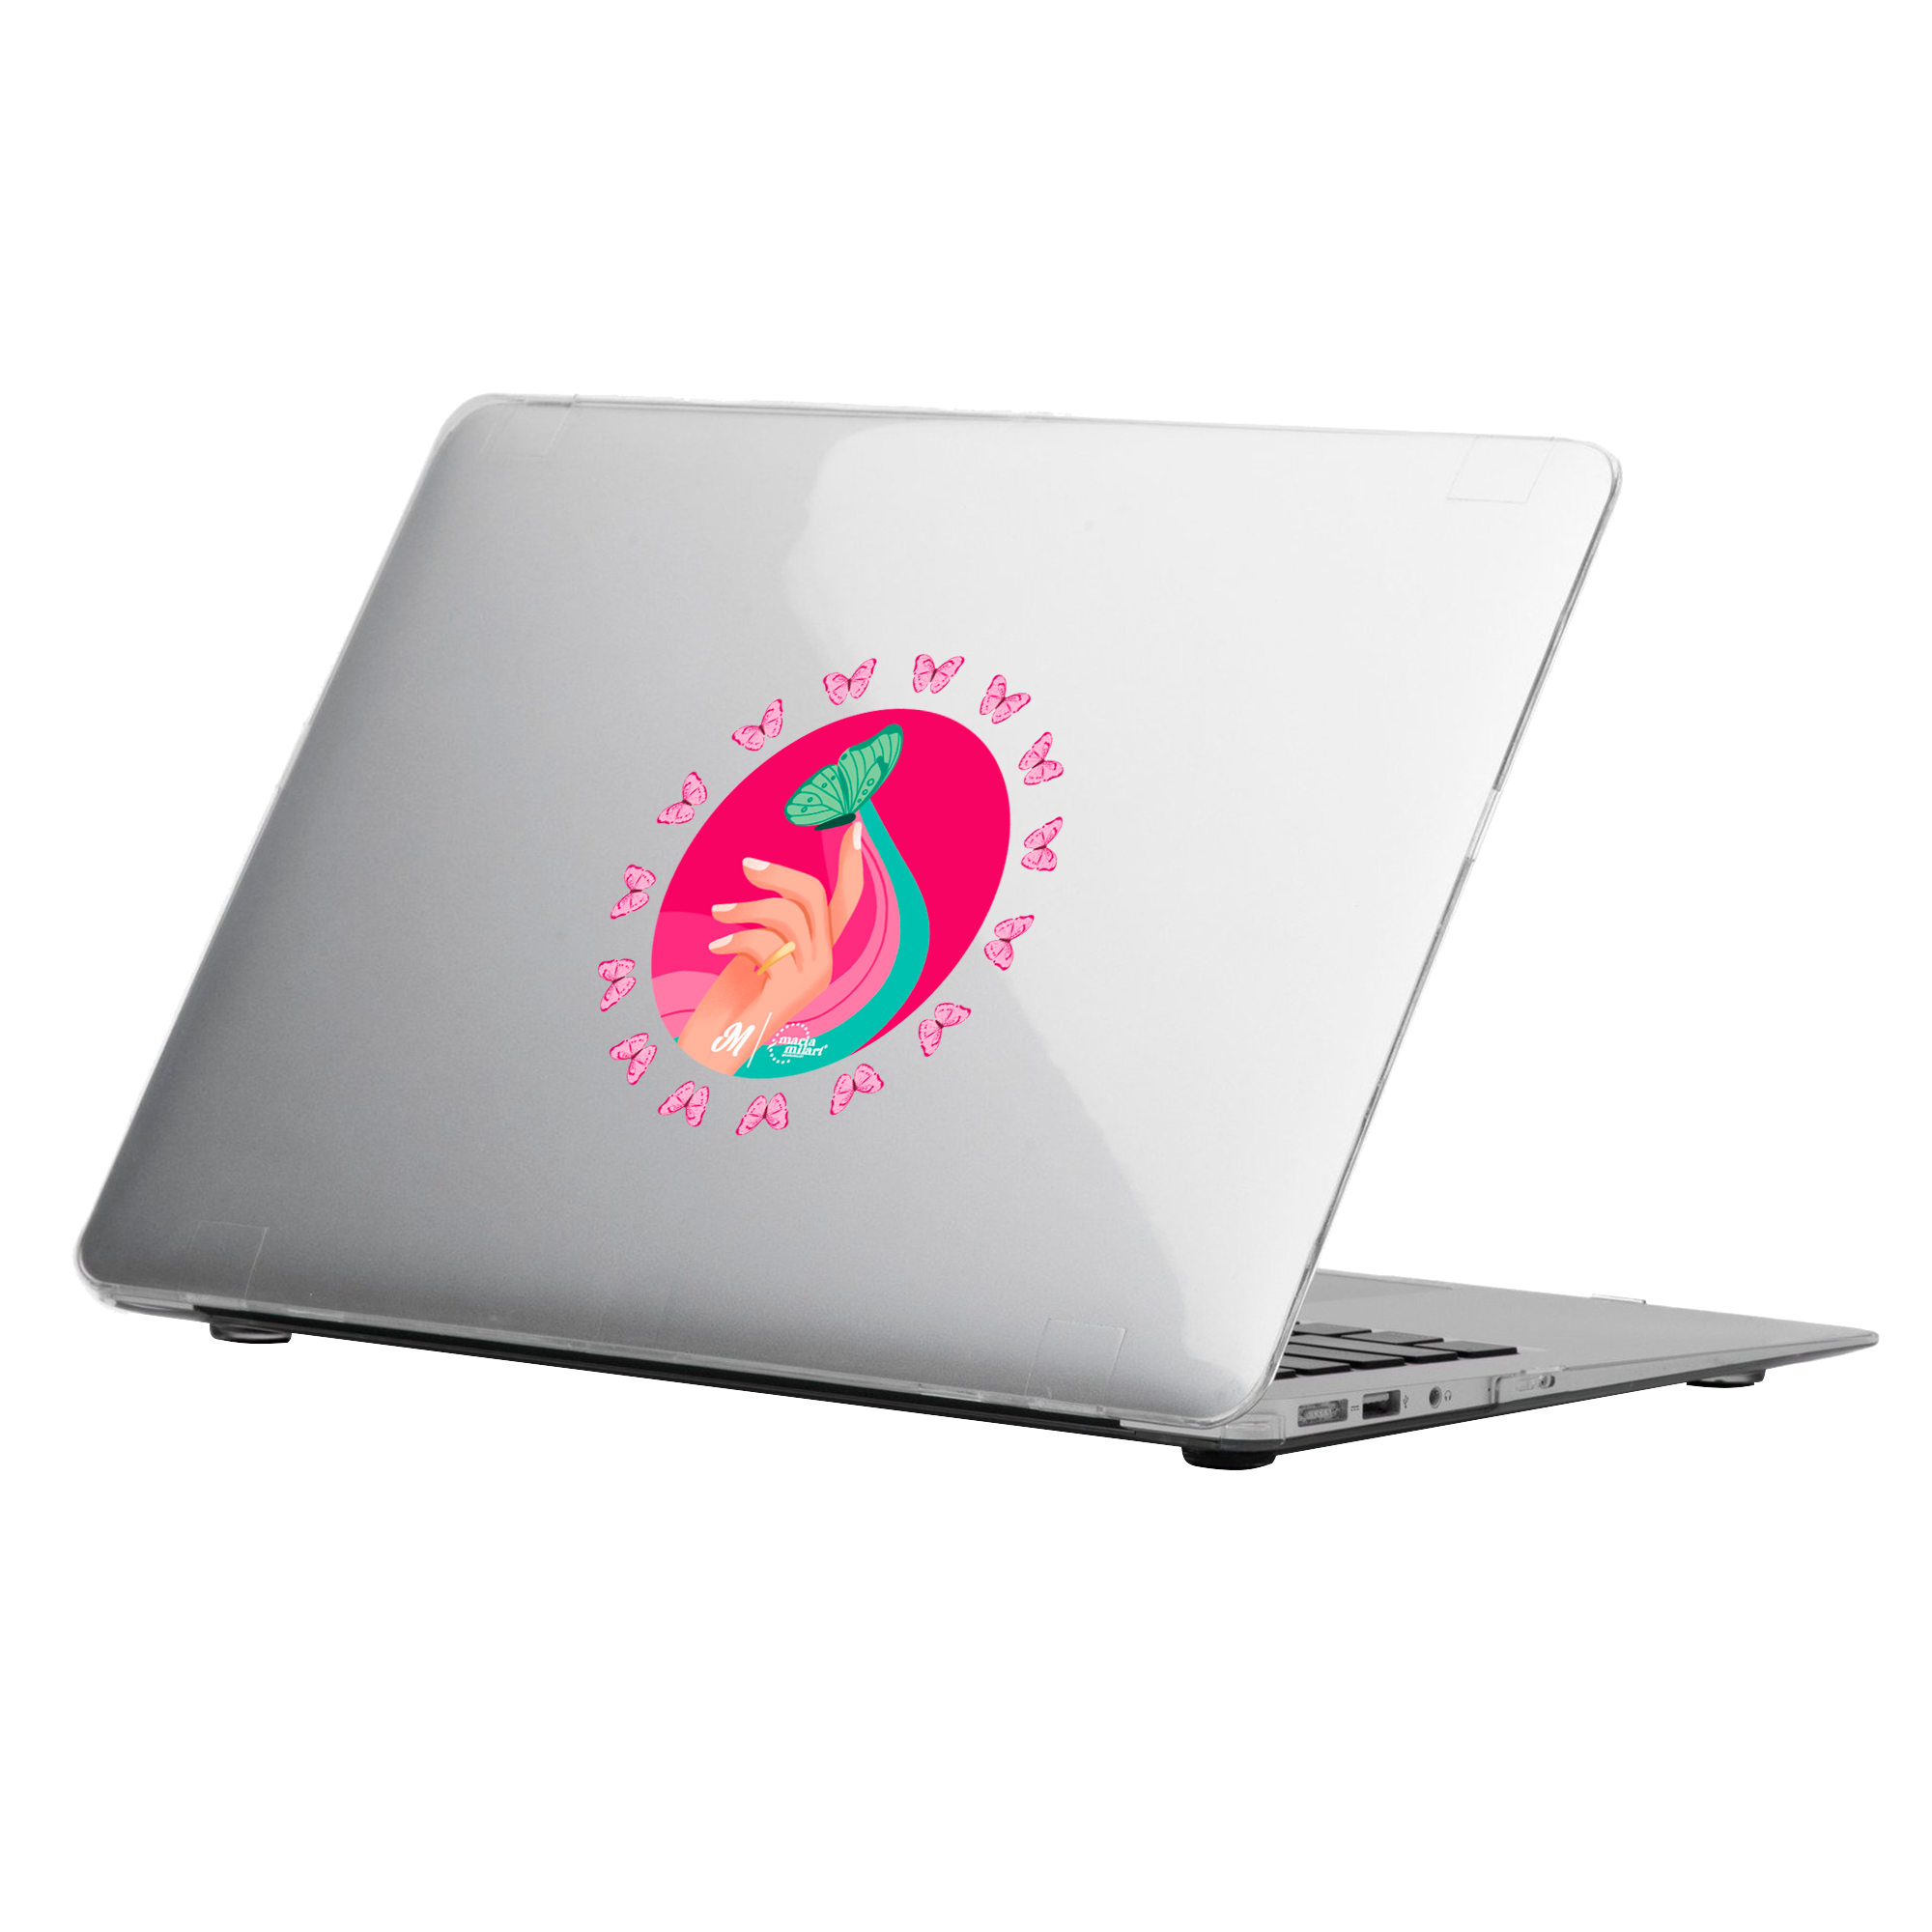 Quiai MacBook Case - Mandala Cases